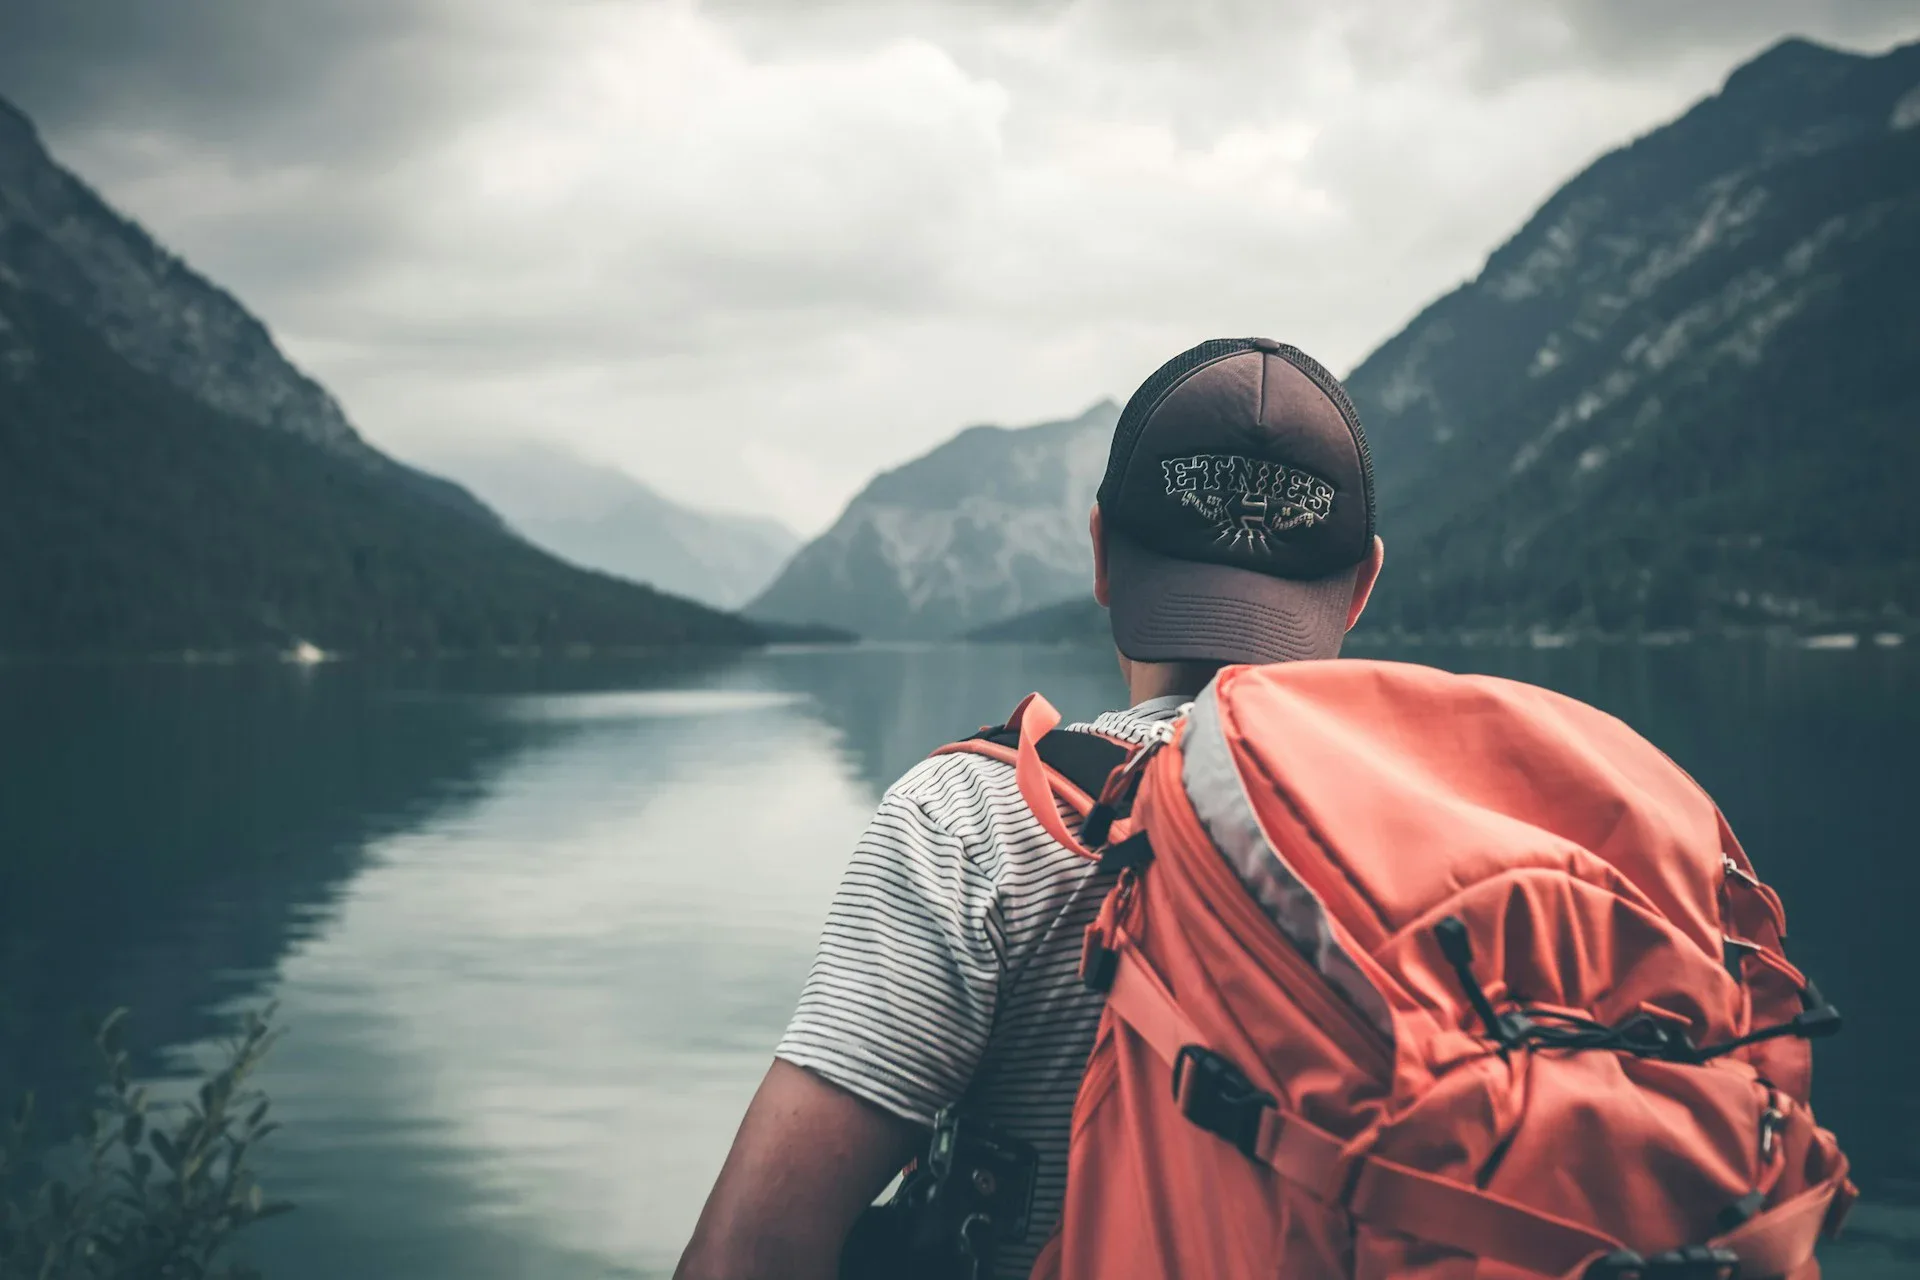 L'homme se tient debout, dos à l'appareil photo, sur fond de lac et de montagnes.